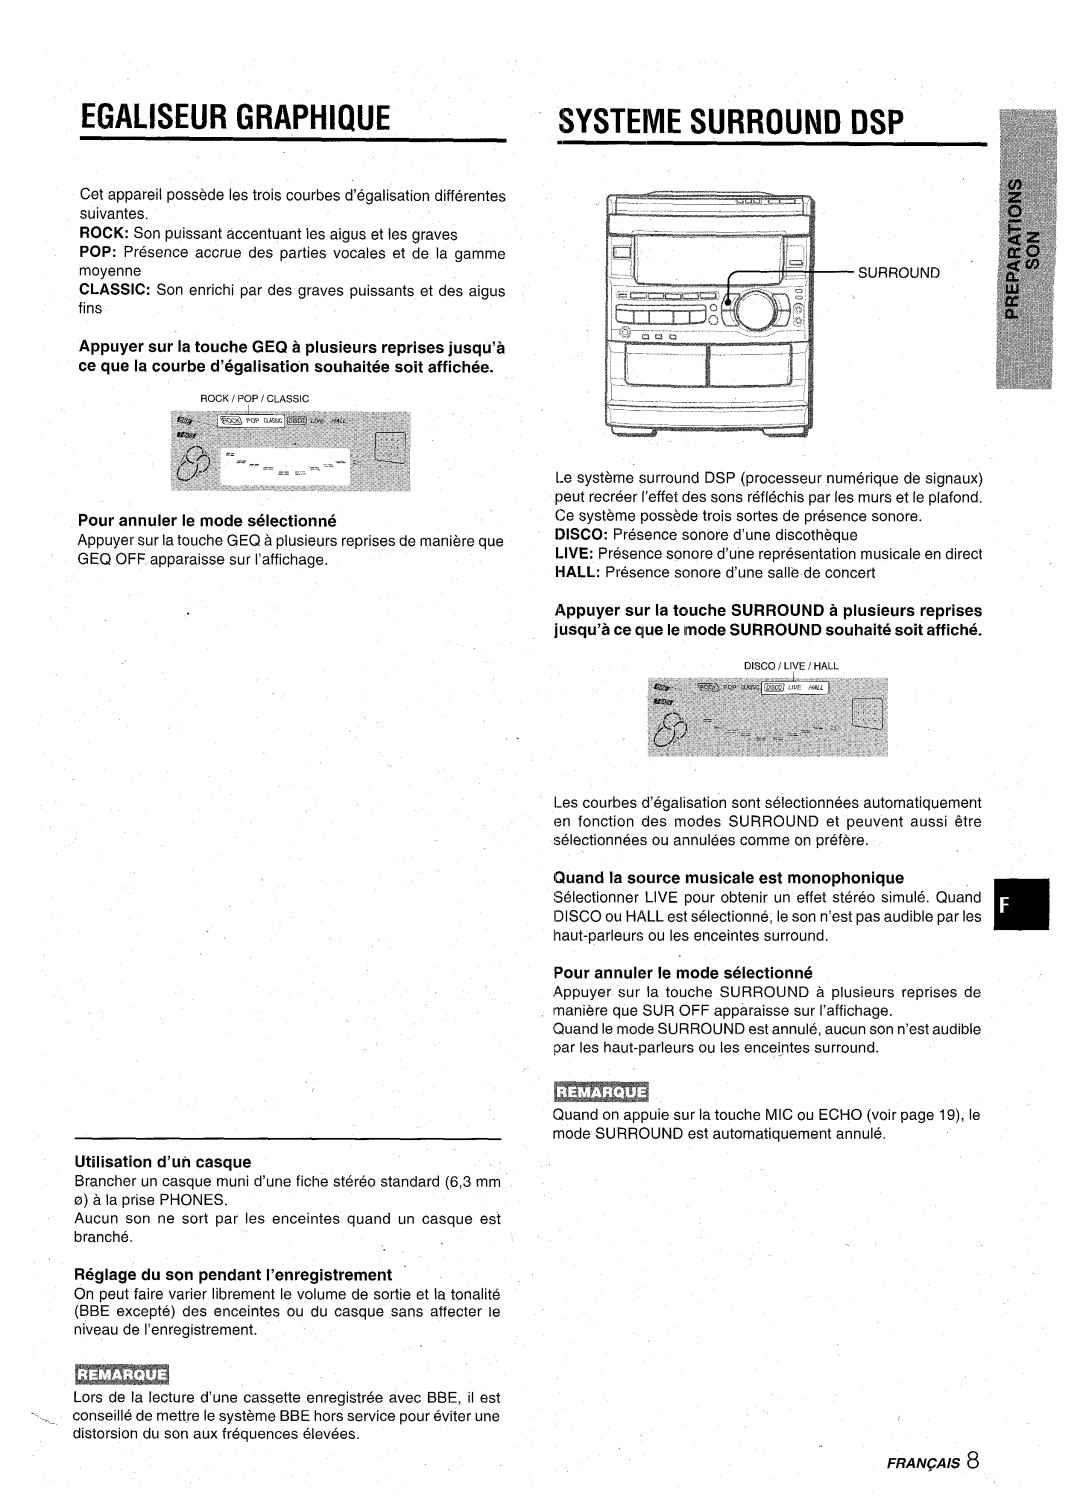 Aiwa CX-NA92 manual Egaliseur Graphique, Systeme Surround Dsp, Pour annuler Ie mode selectionne, Utilisation d’un casque 